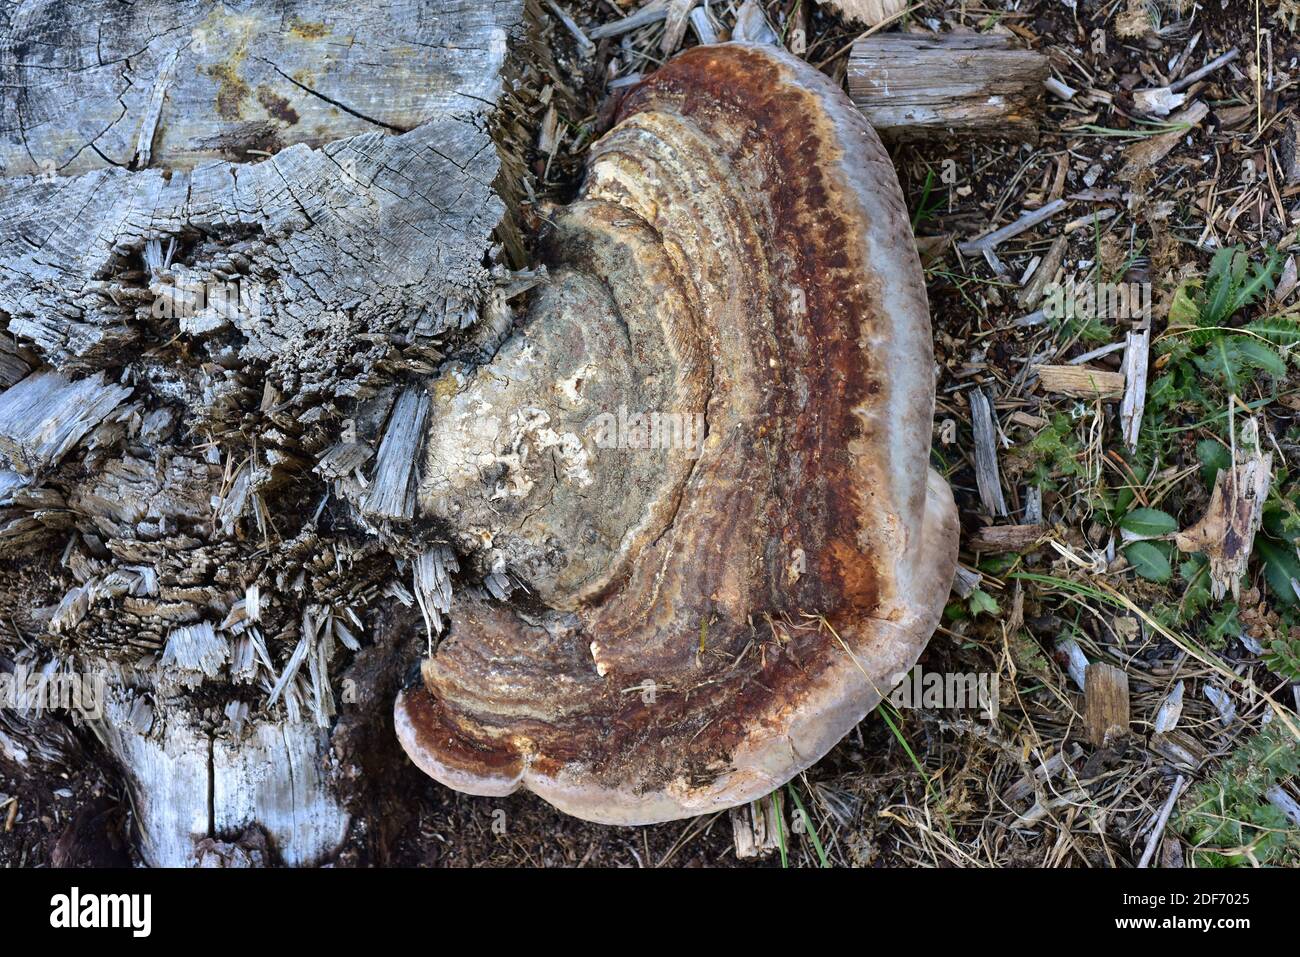 El conk rojo del cinturón (Fomitopsis pinicola) es un parásito del hongo o saprófito del tronco de los pinos. Esta foto fue tomada cerca de Cantavieja, provincia de Teruel, Aragón, Foto de stock